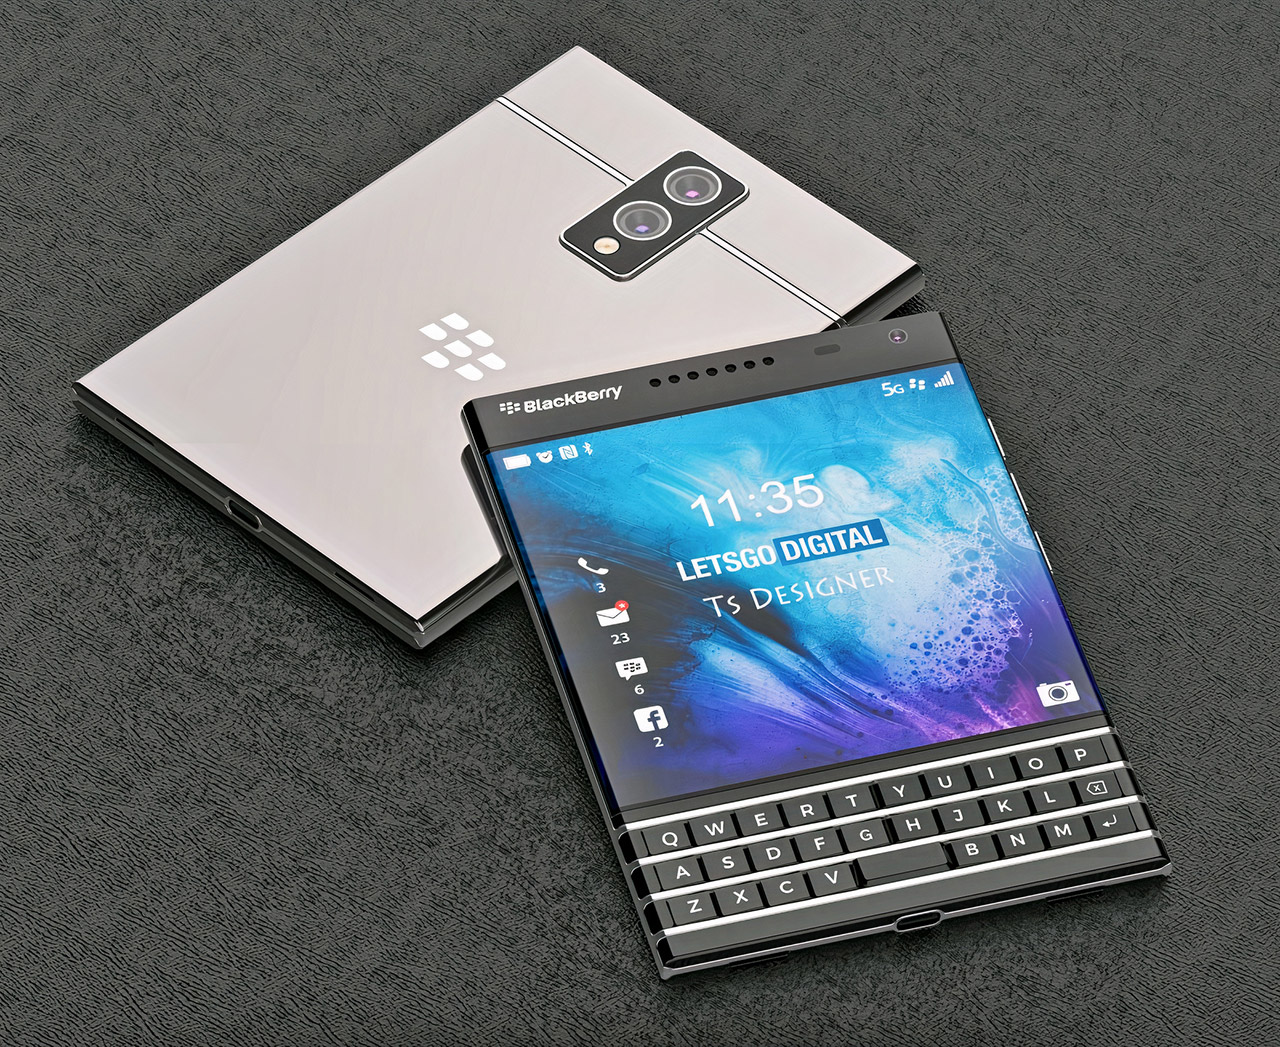 BlackBerry Passport 2 Smartphone